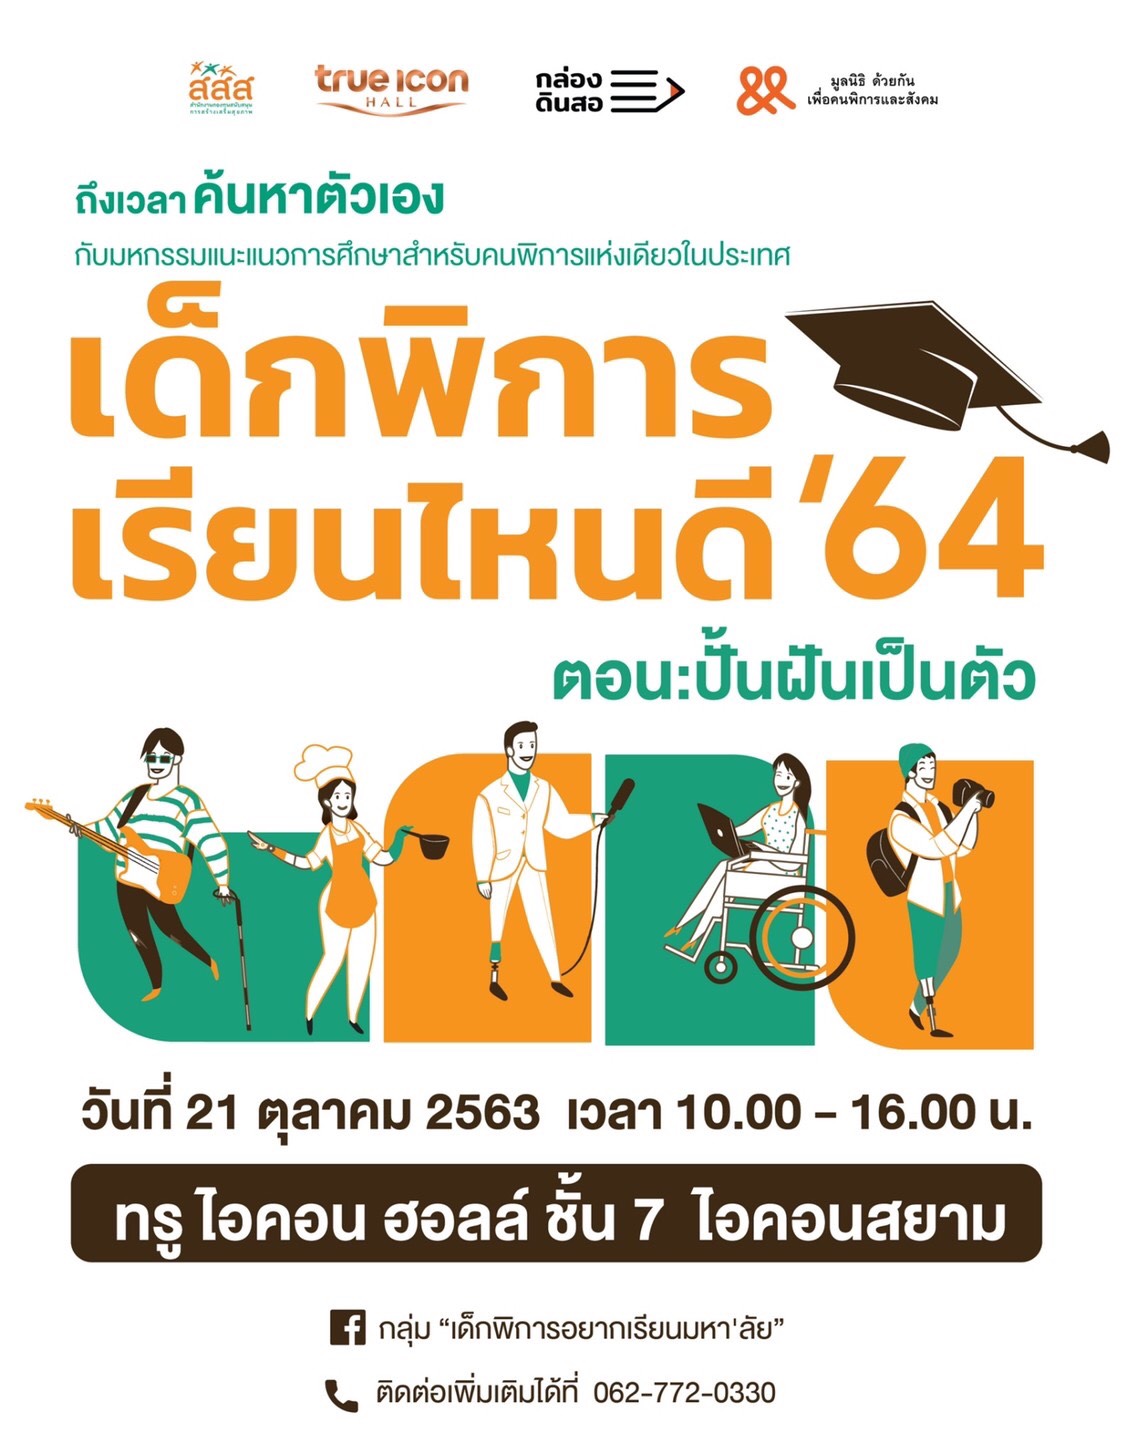 มหกรรมแนะแนวการศึกษาสำหรับคนพิการแห่งเดียวในประเทศไทย "เด็กพิการเรียนไหนดี 64" ตอนปั้นฝันเป็นตัว